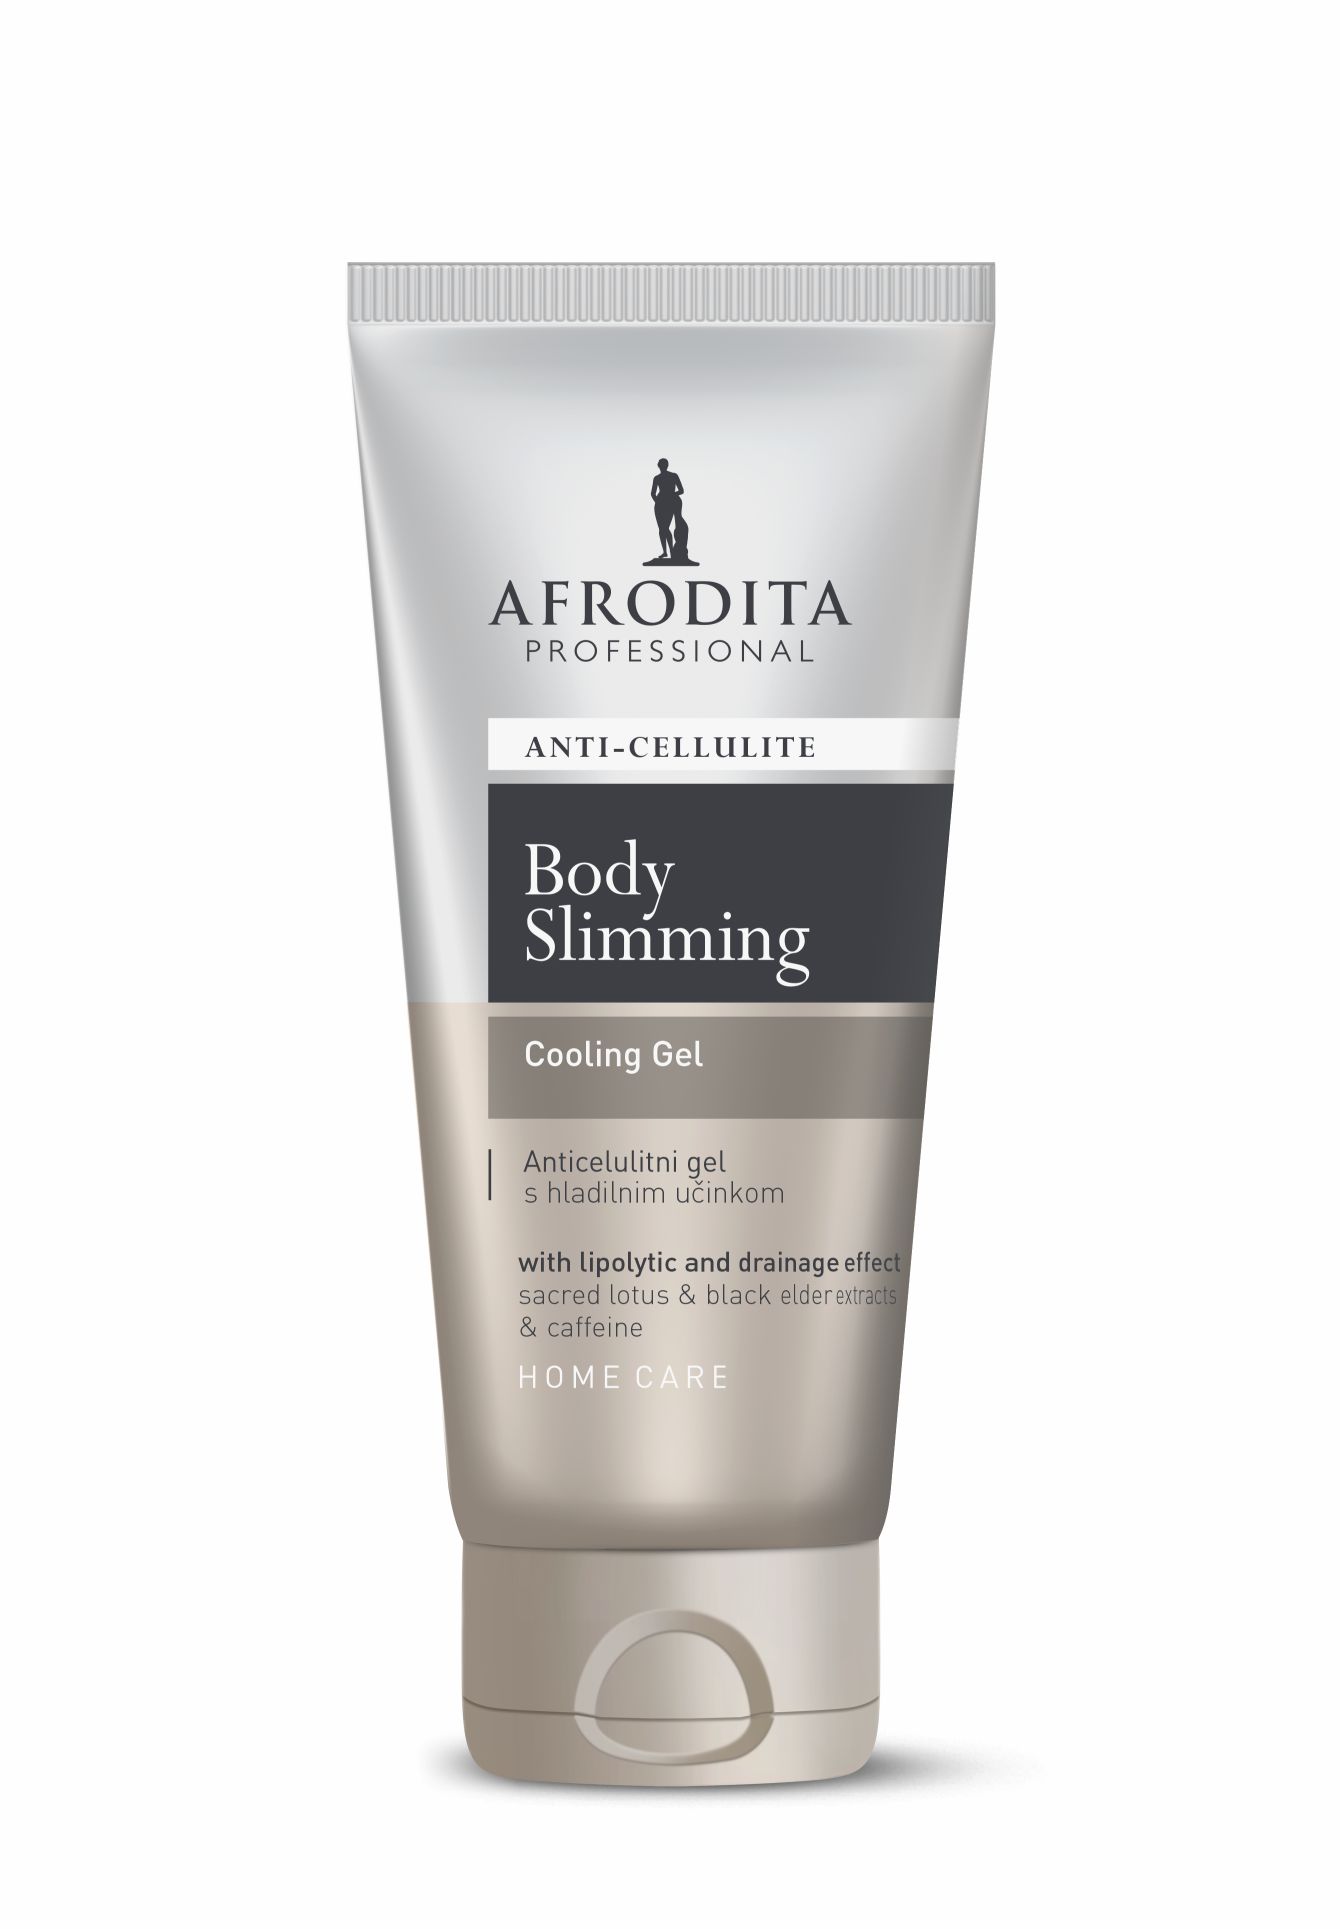 Kozmetika Afrodita - Body slimming Żel chłodzacy 150 ml